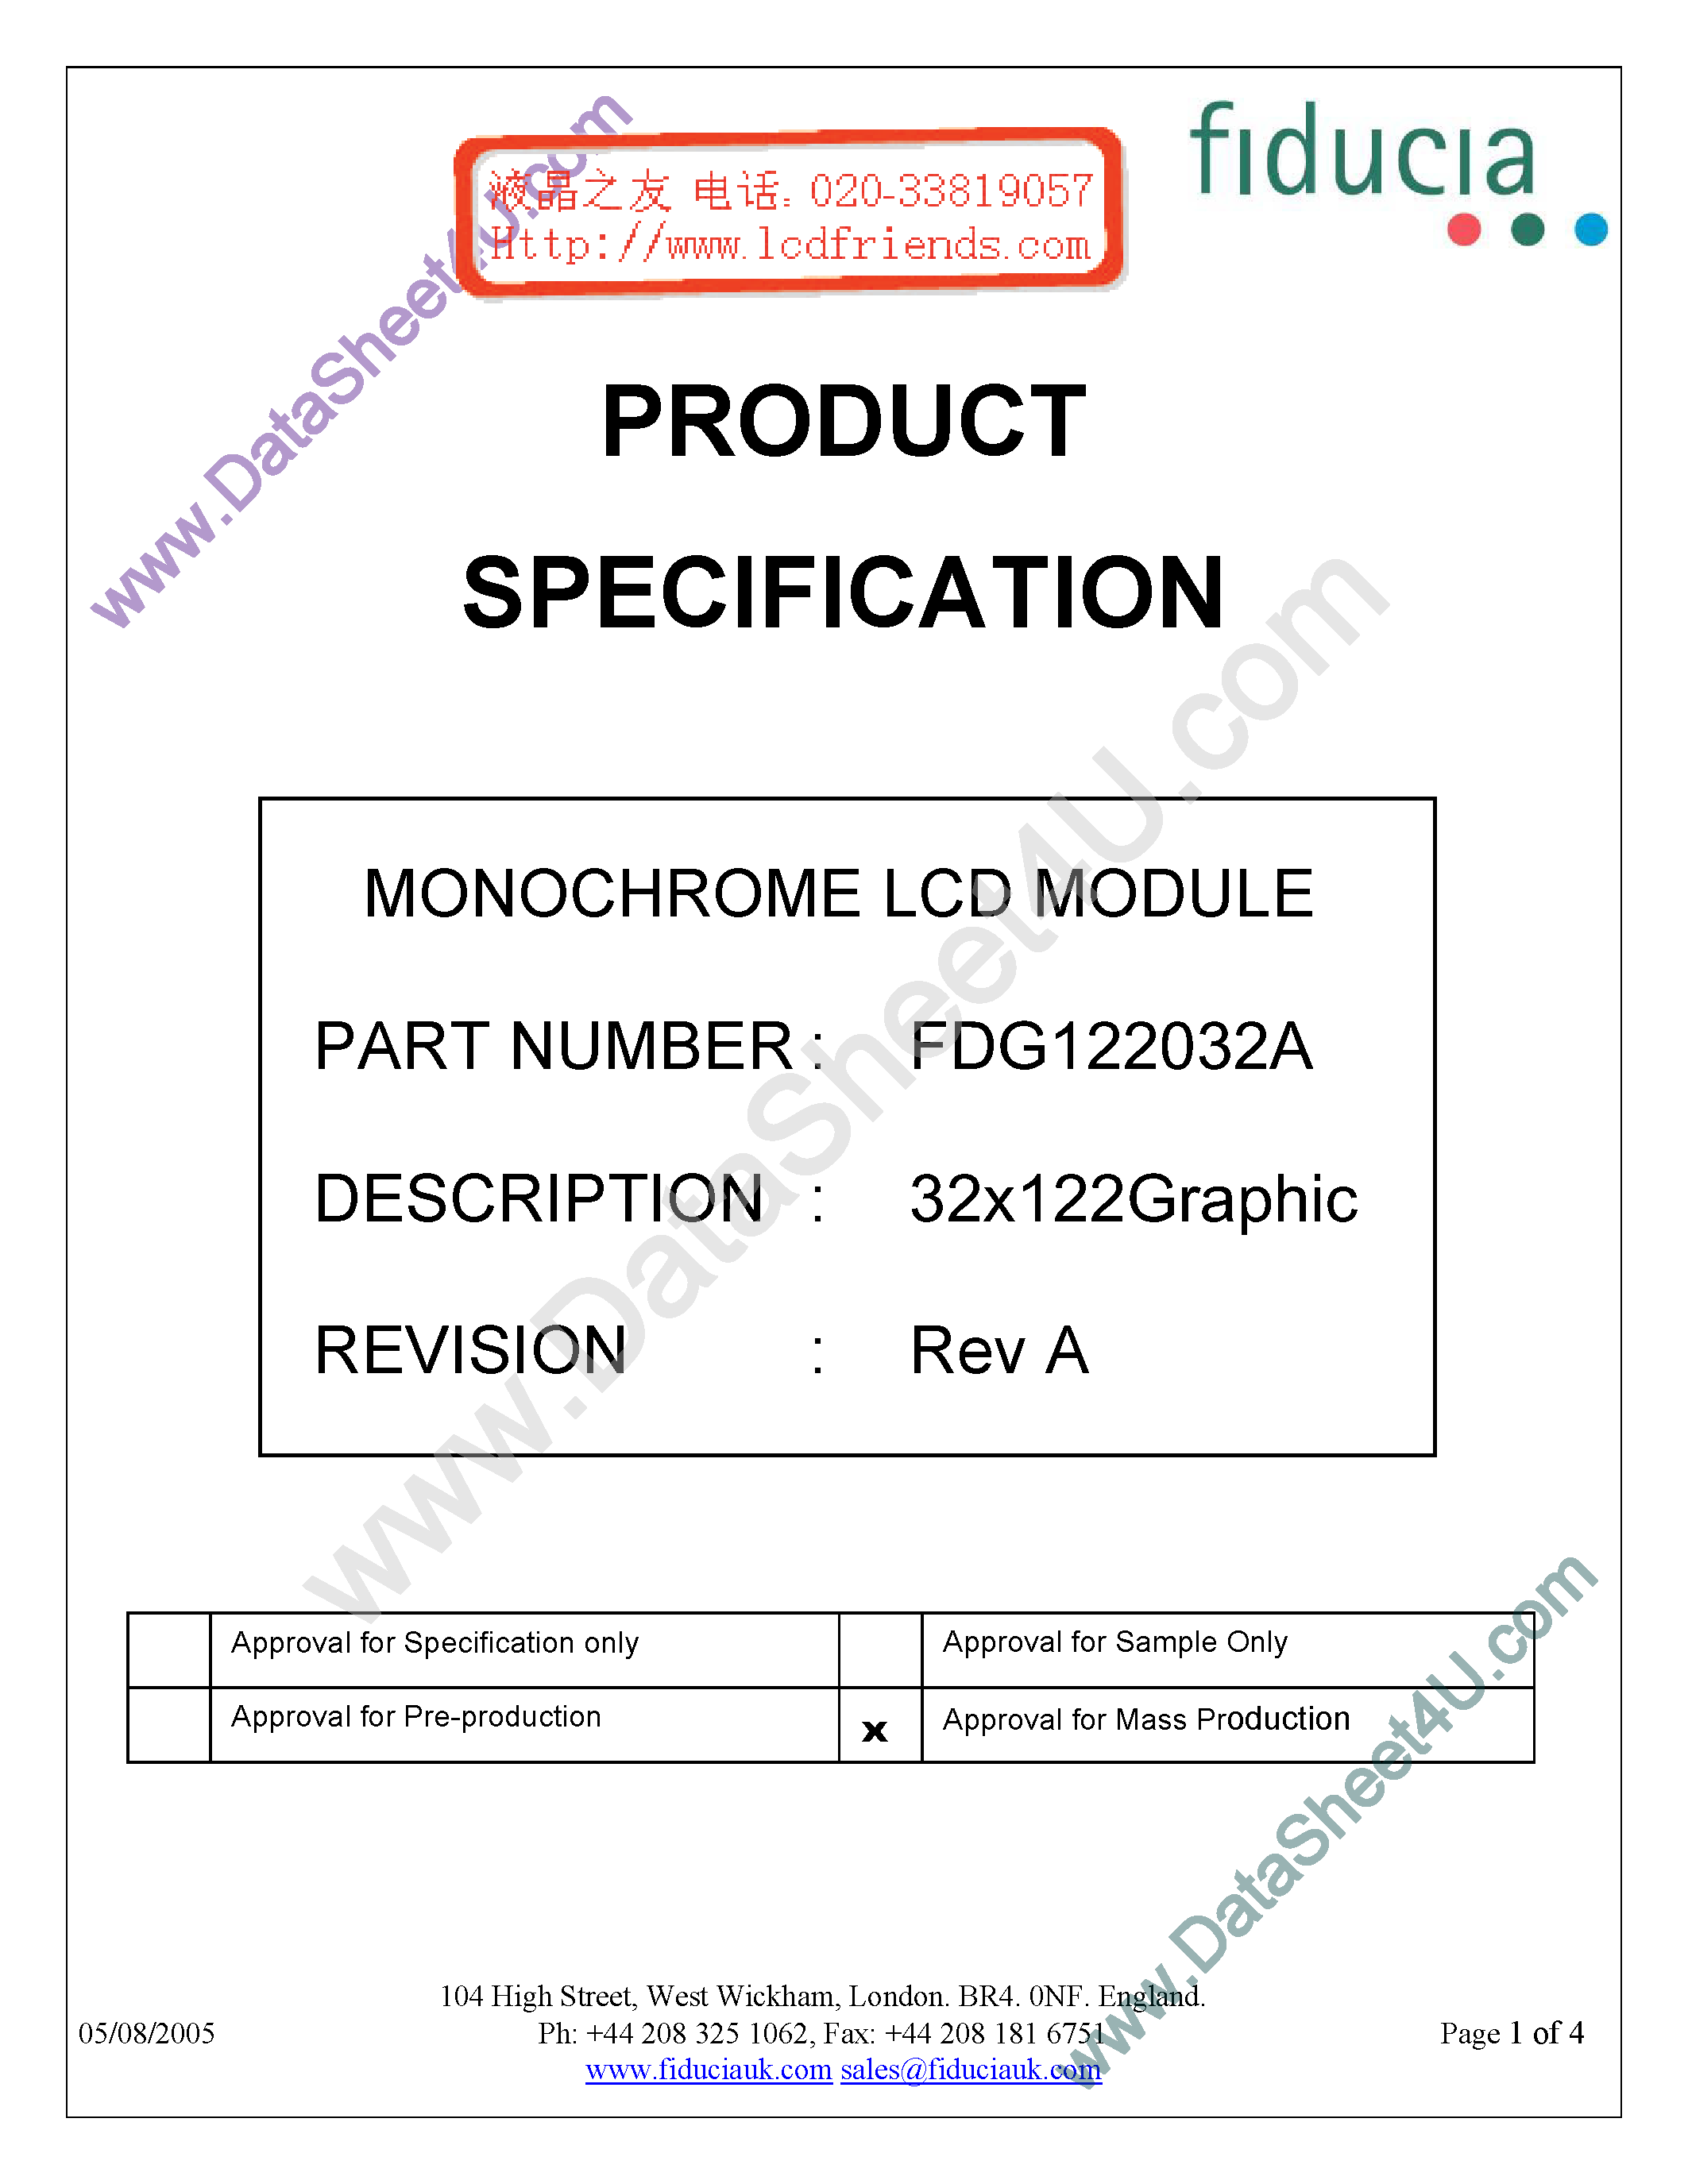 Даташит FDG122032A - Monochrome Lcd Module страница 1